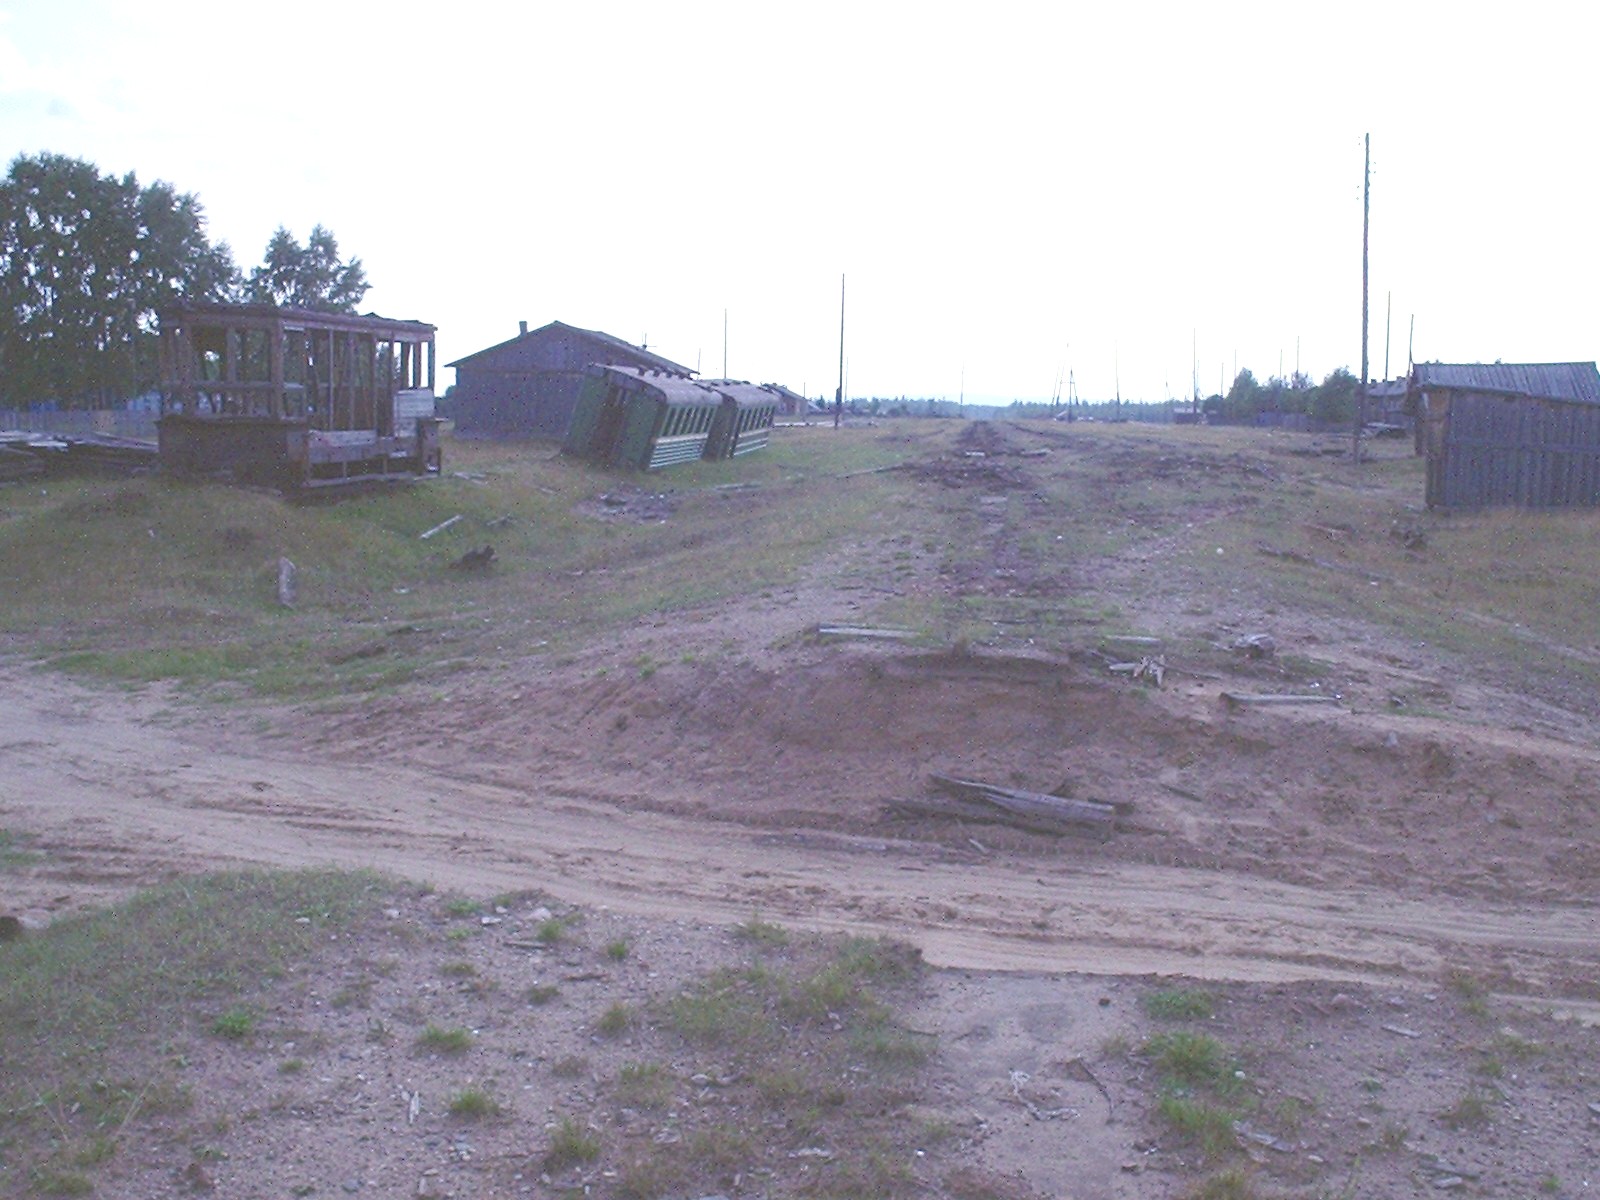 Сурская узкоколейная железная дорога — фотографии, сделанные в 2005 году (часть 2)